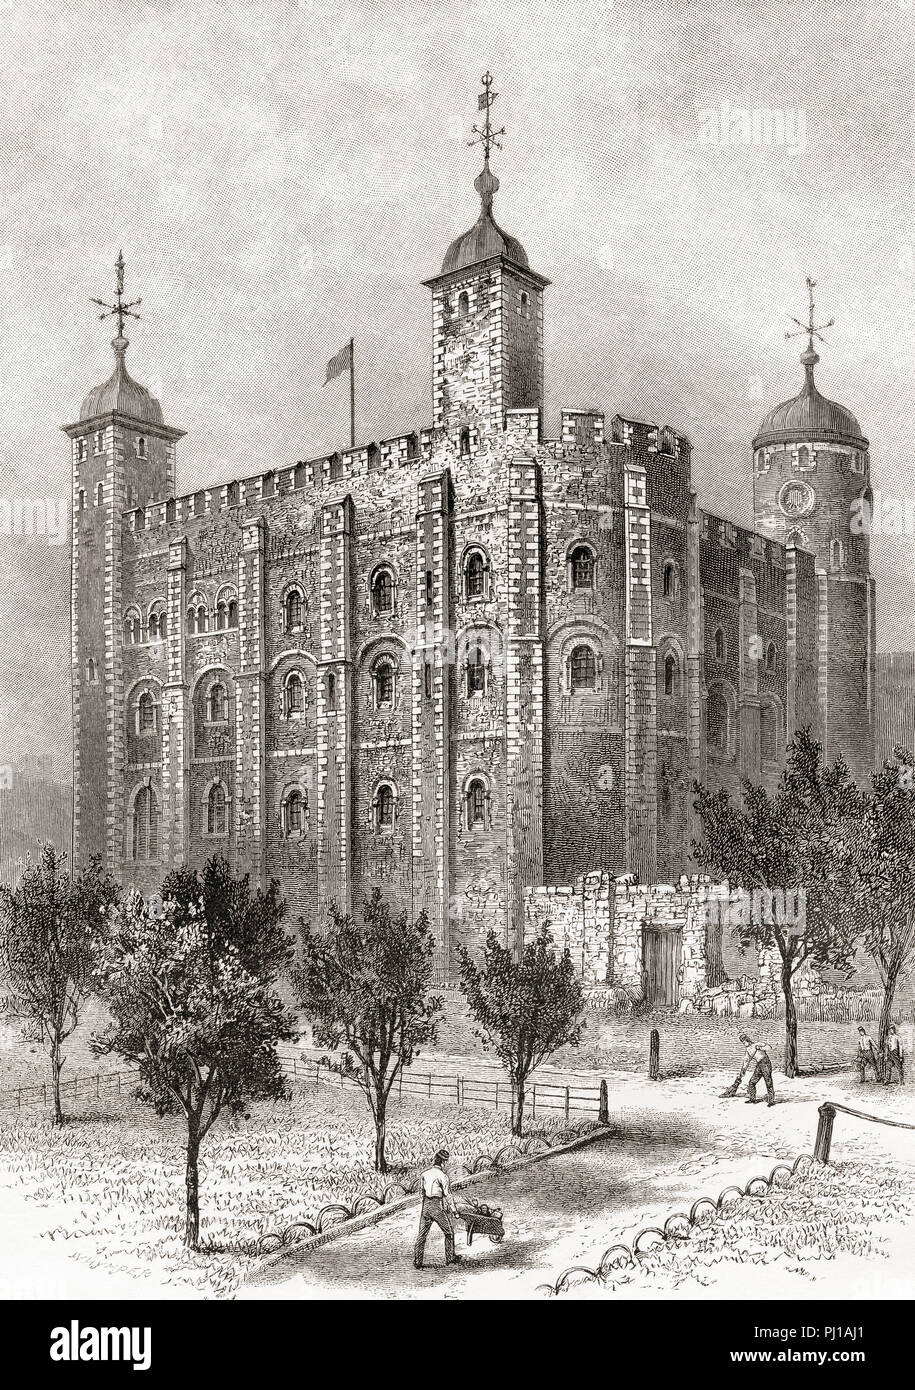 La Tour Blanche vu du sud-est. La Tour Blanche, une tour centrale, le vieux donjon, à la Tour de Londres, en Angleterre. Photos de Londres, publié en 1890. Banque D'Images